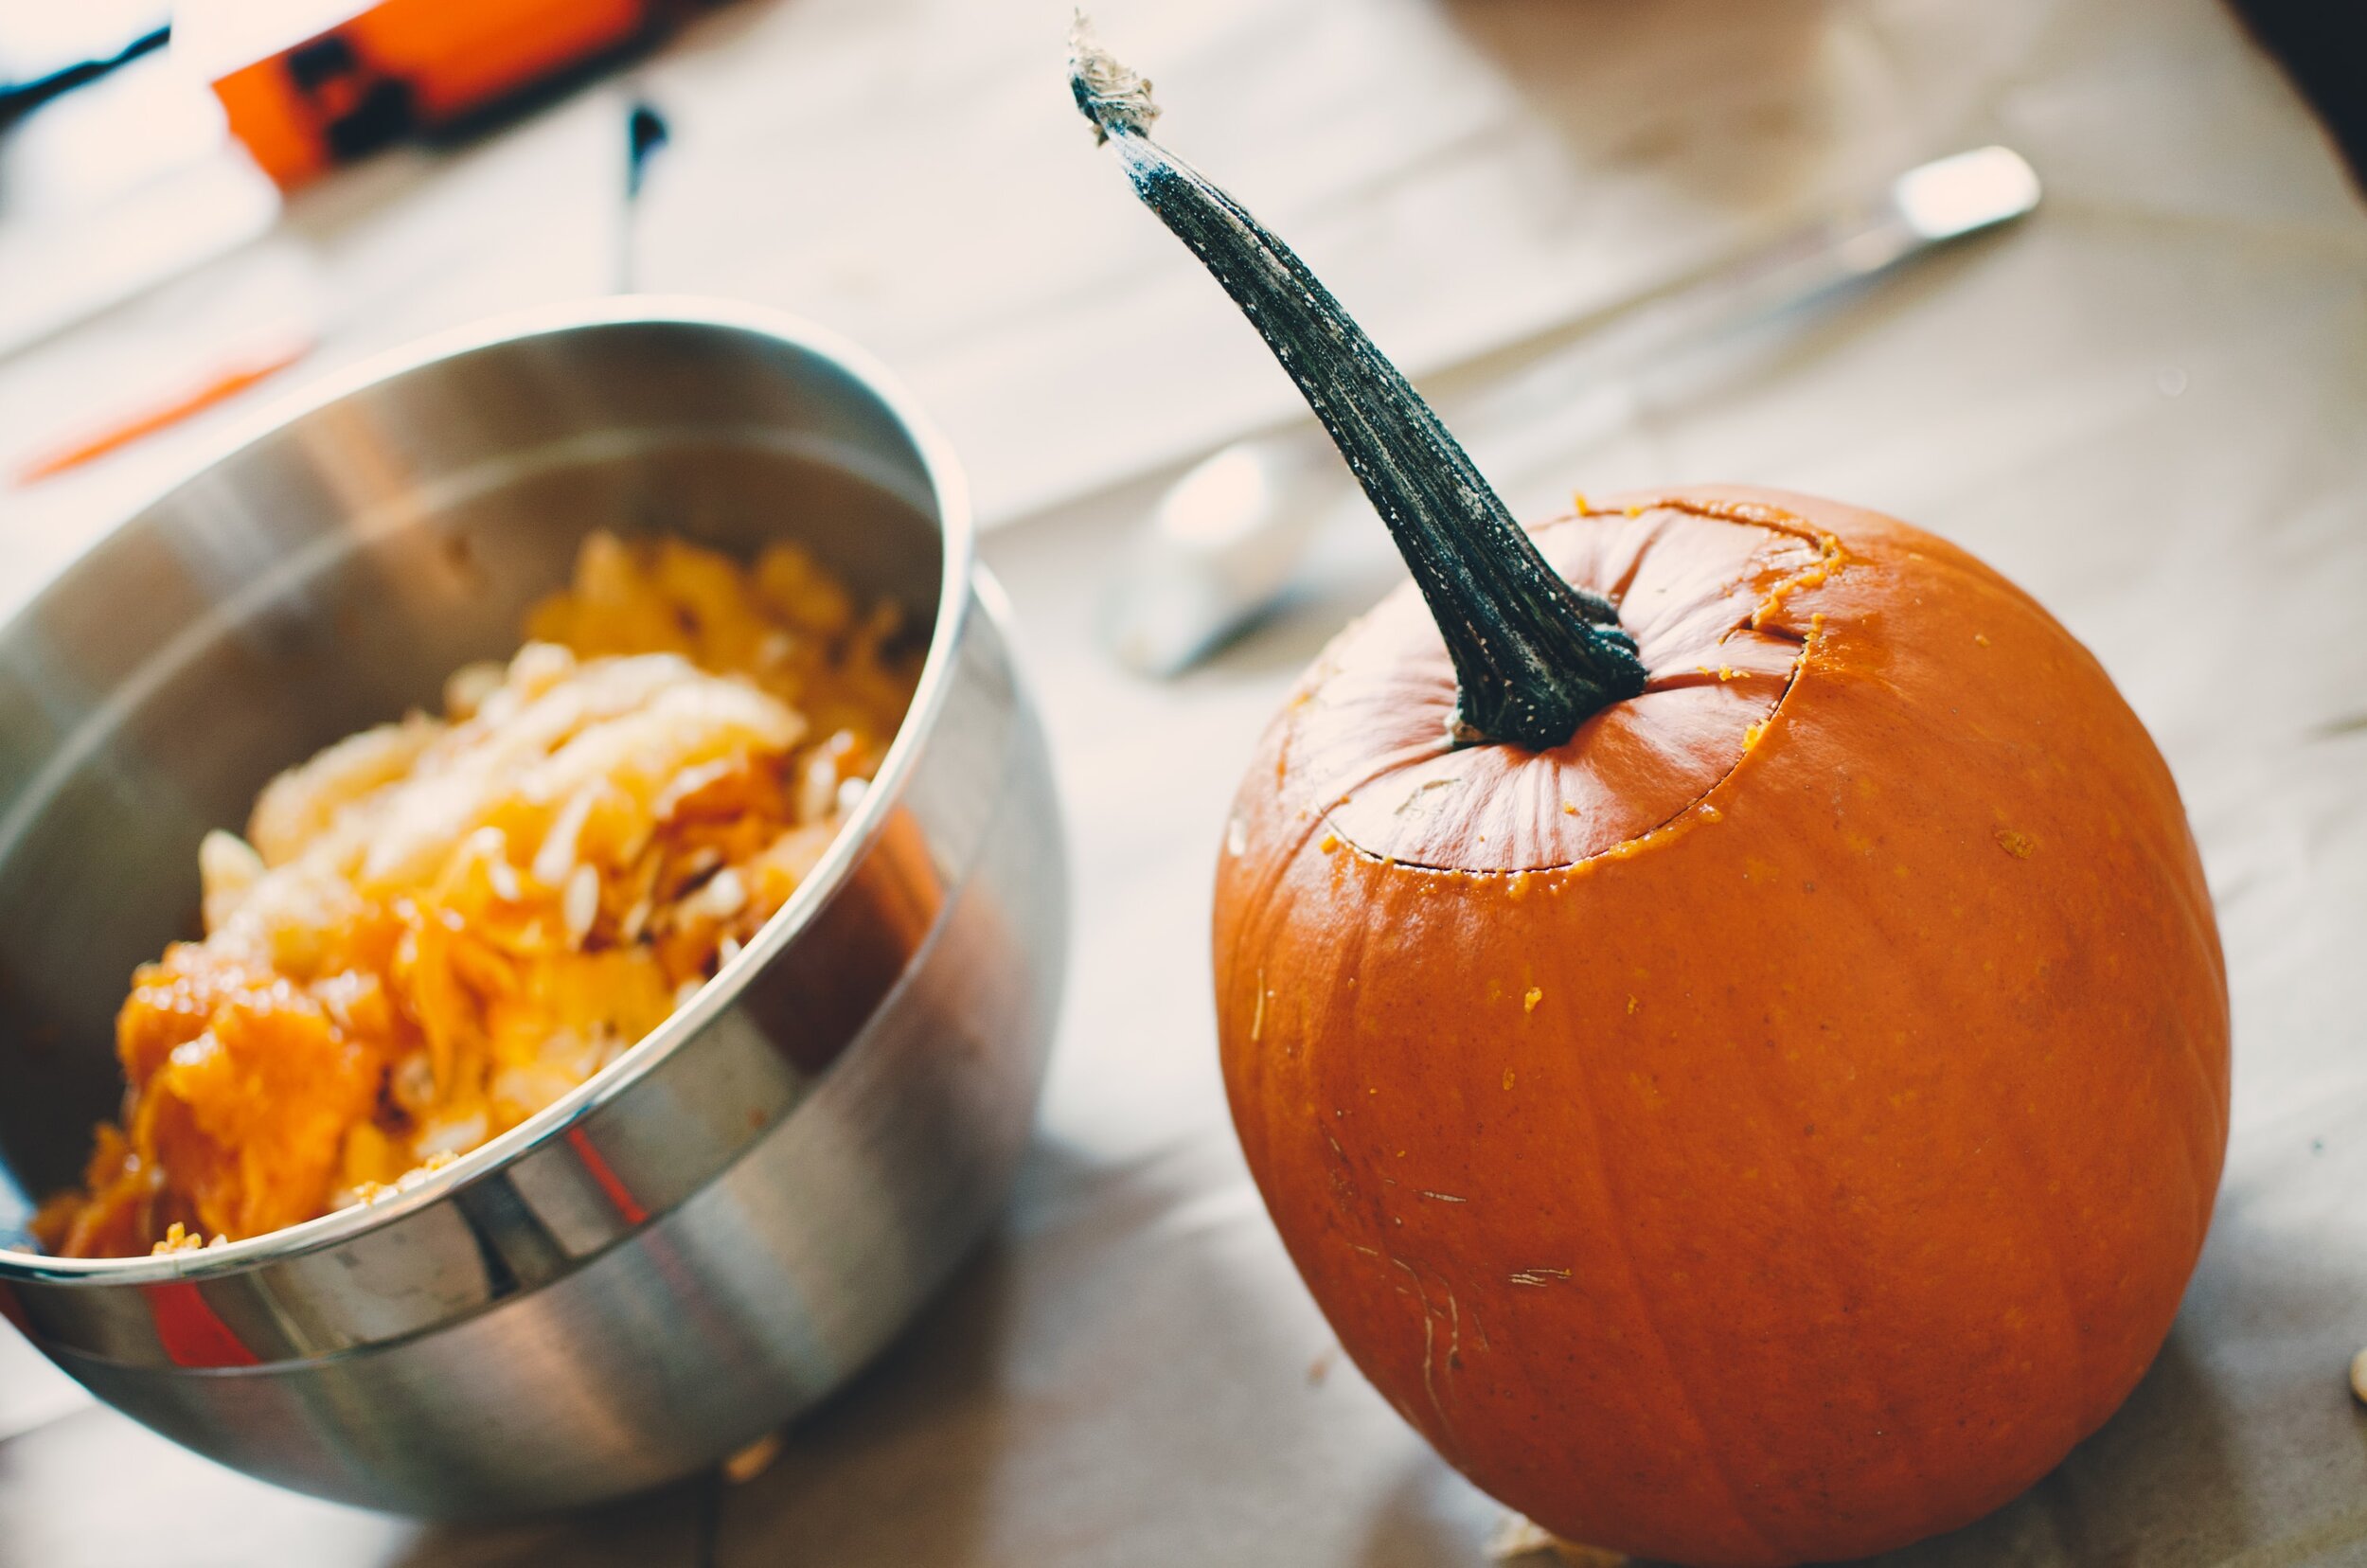 pumpkin carving.jpg